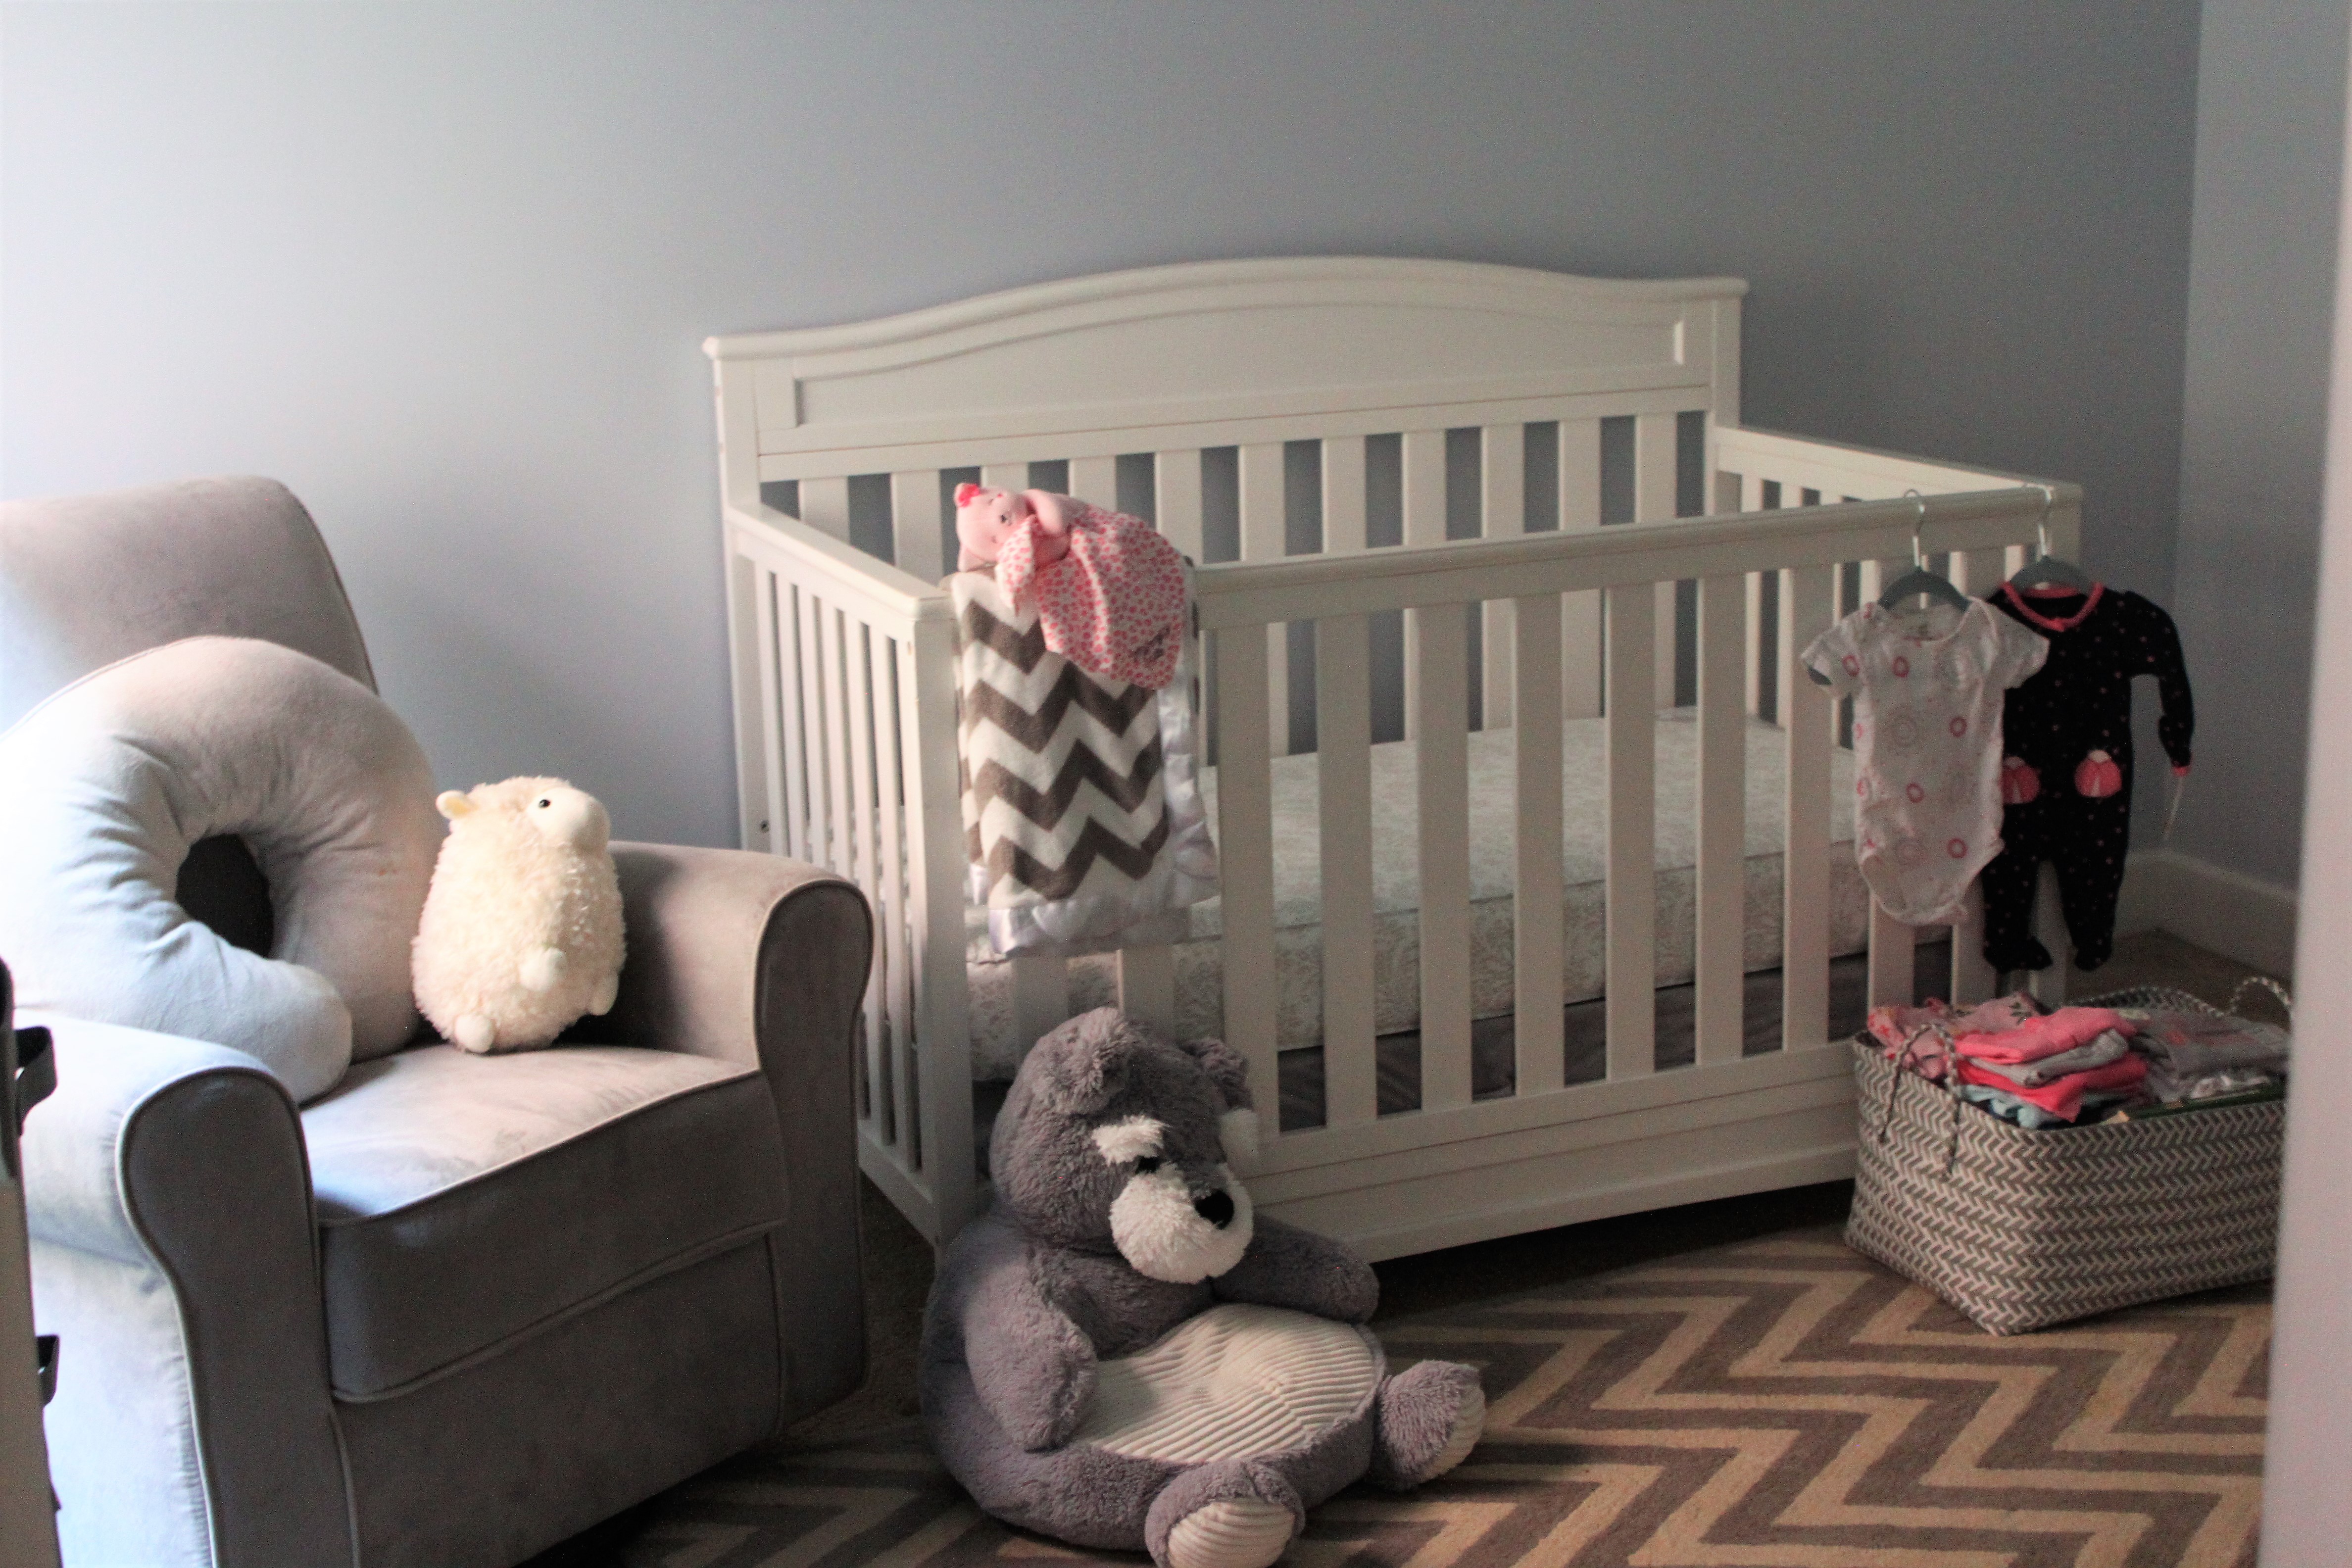 Our nursery essentials: crib, mattress, rocker